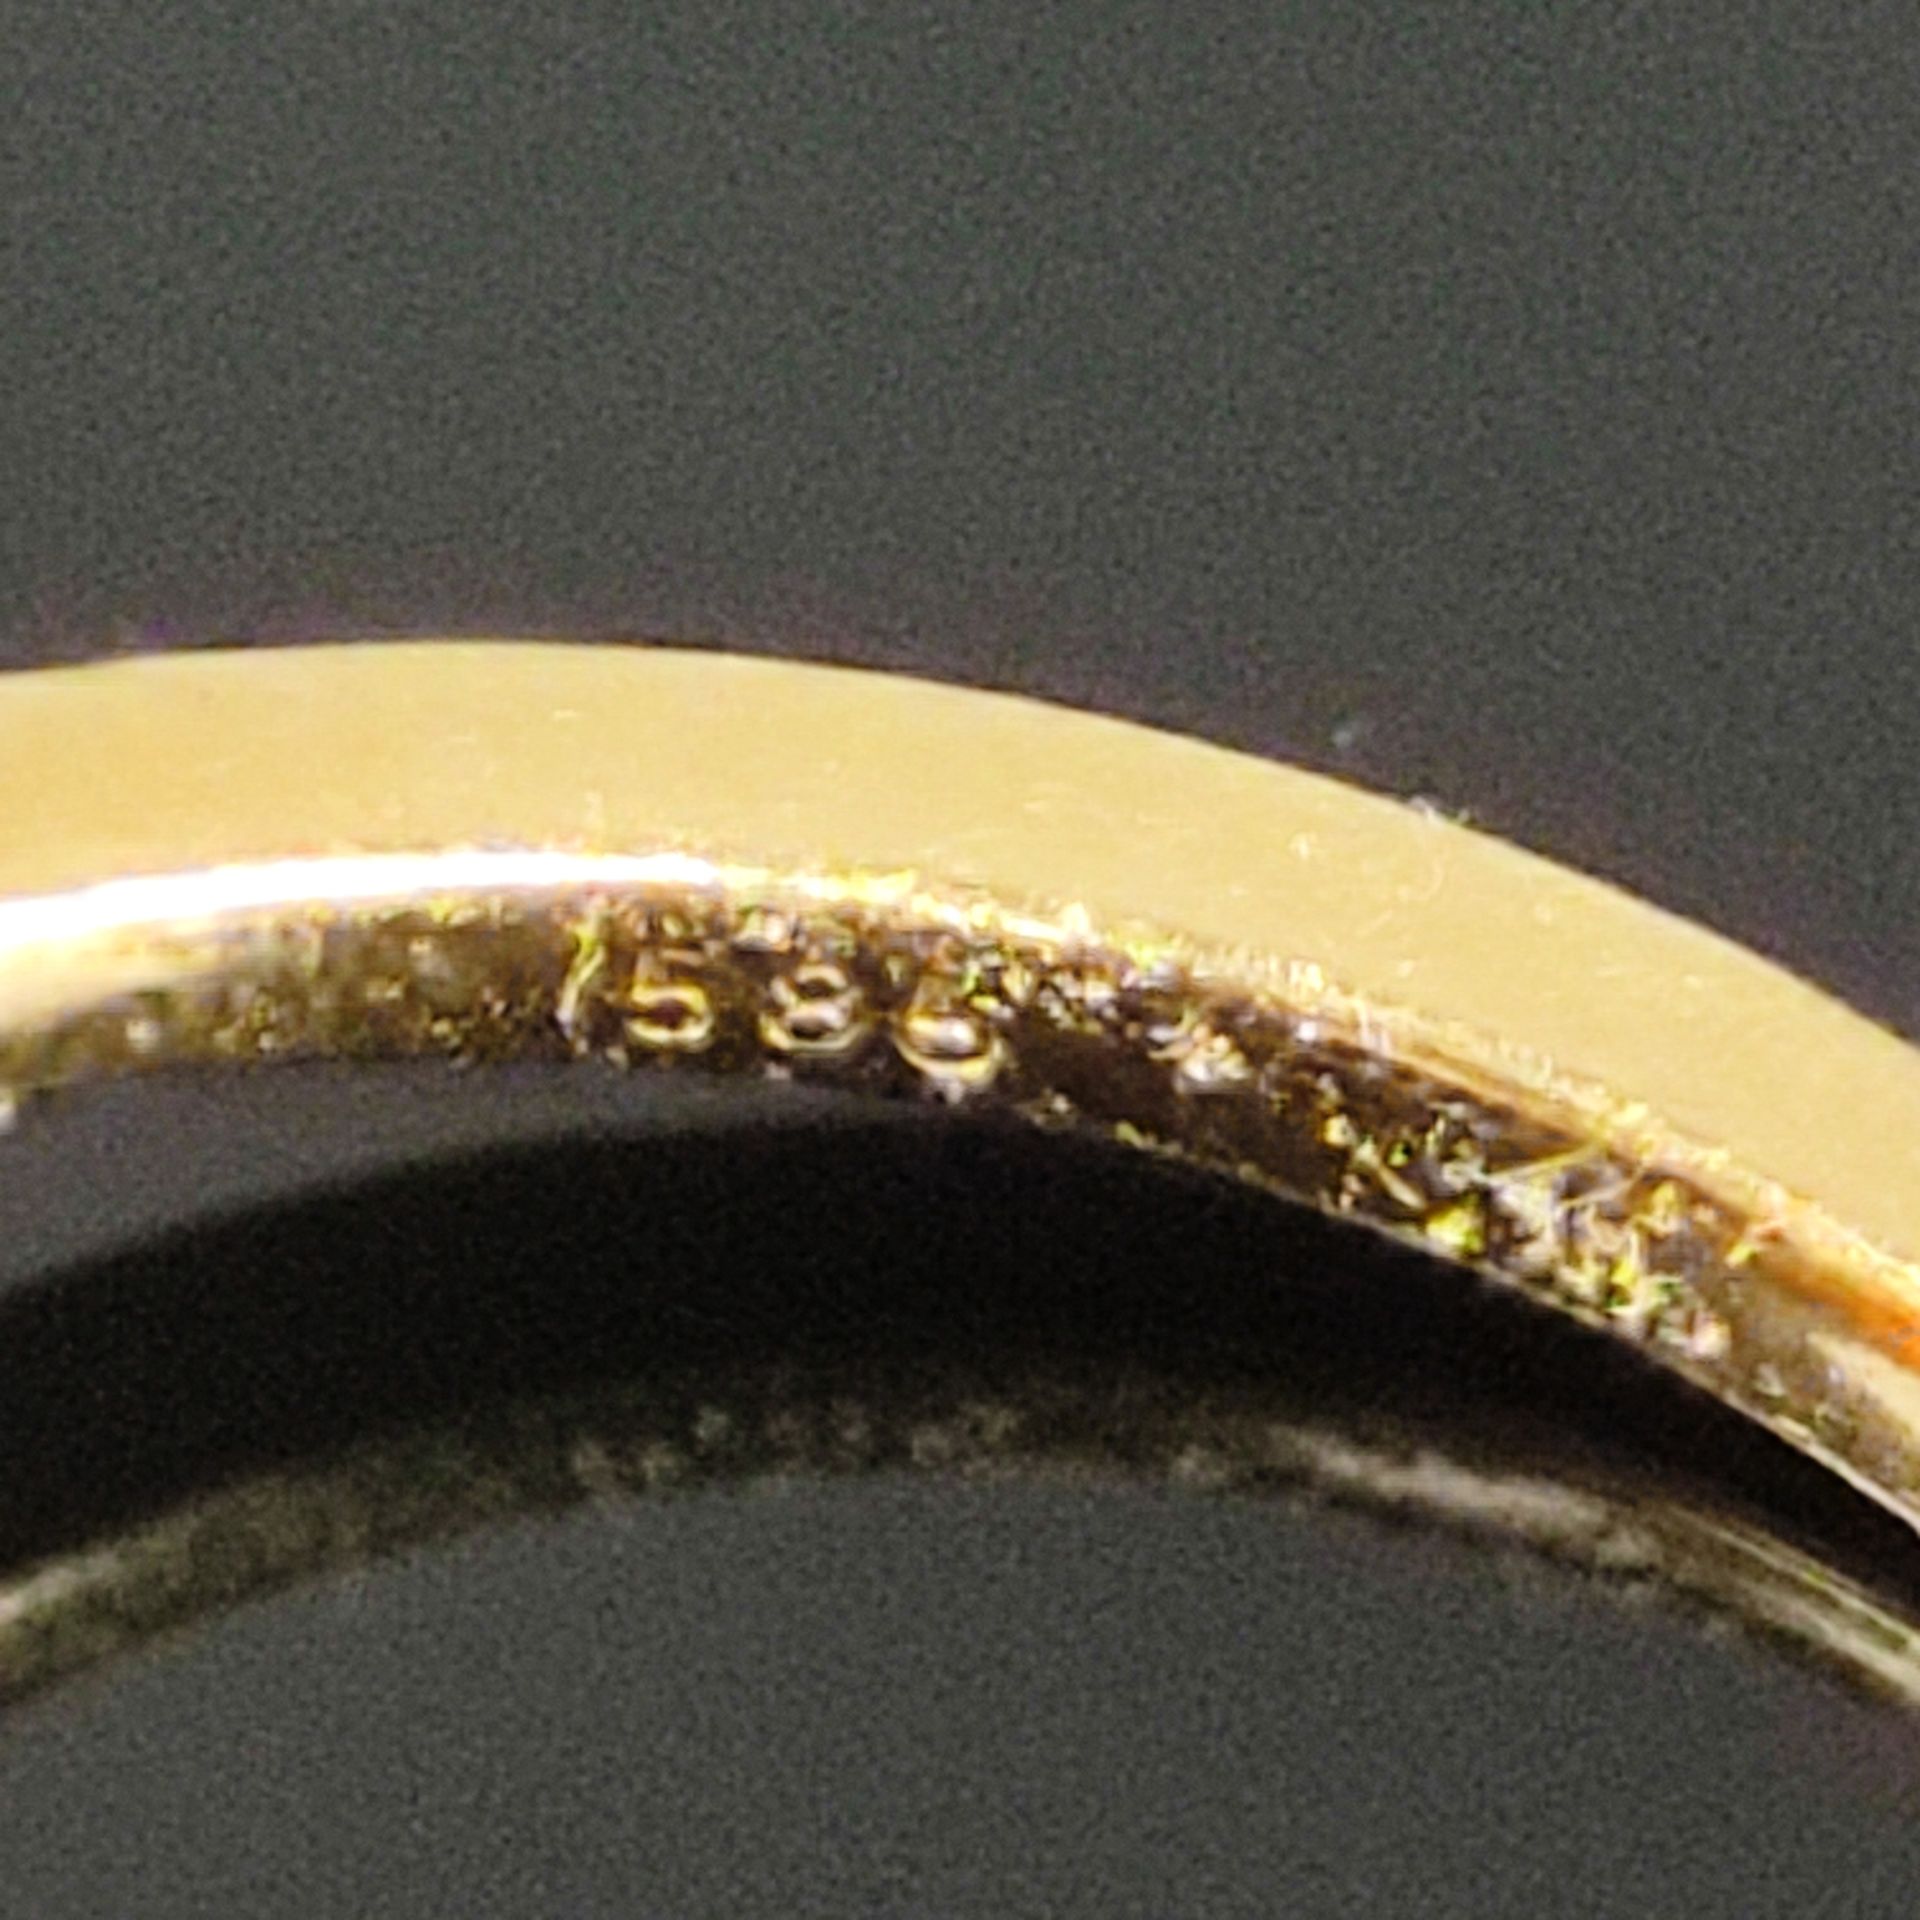 Eleganter Opal-Ring, 585/14K Gelbgold (punziert), 3,95g, mittig Opal-Cabochon (10,5x7x4mm) von inte - Bild 3 aus 3